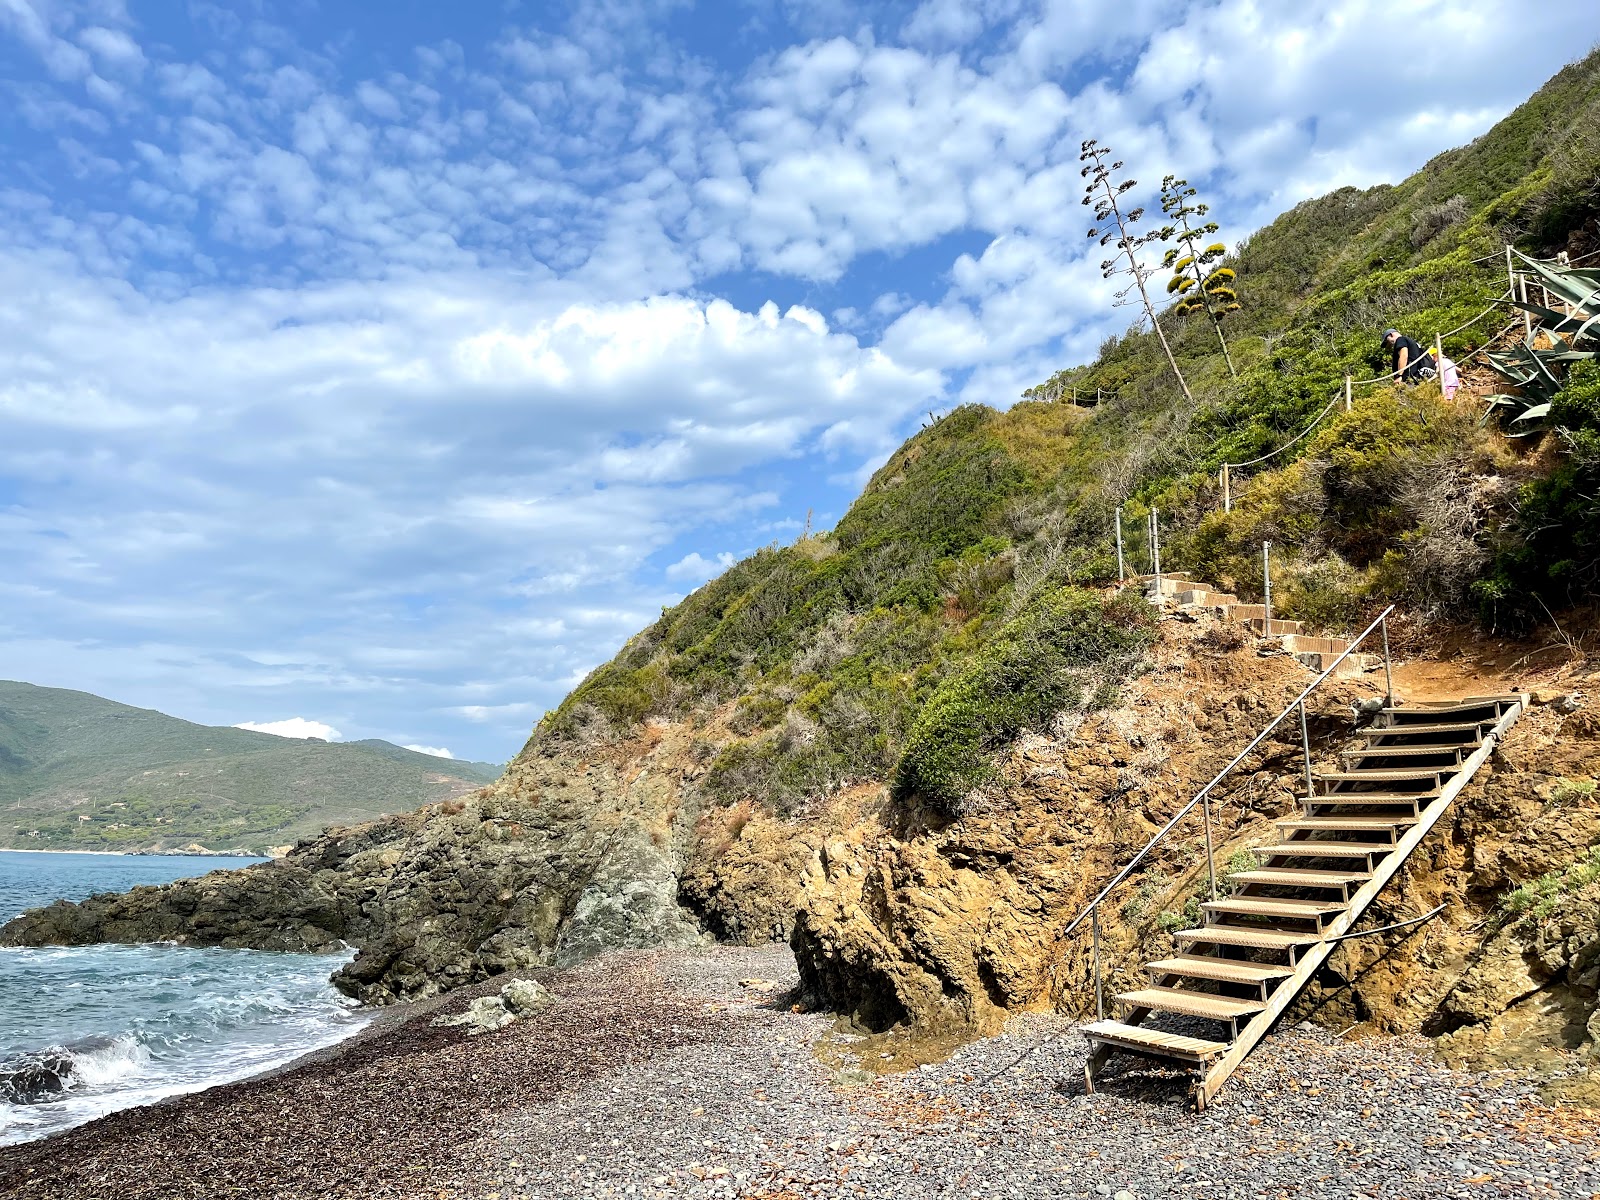 Foto de Spiaggia Canata respaldado por acantilados